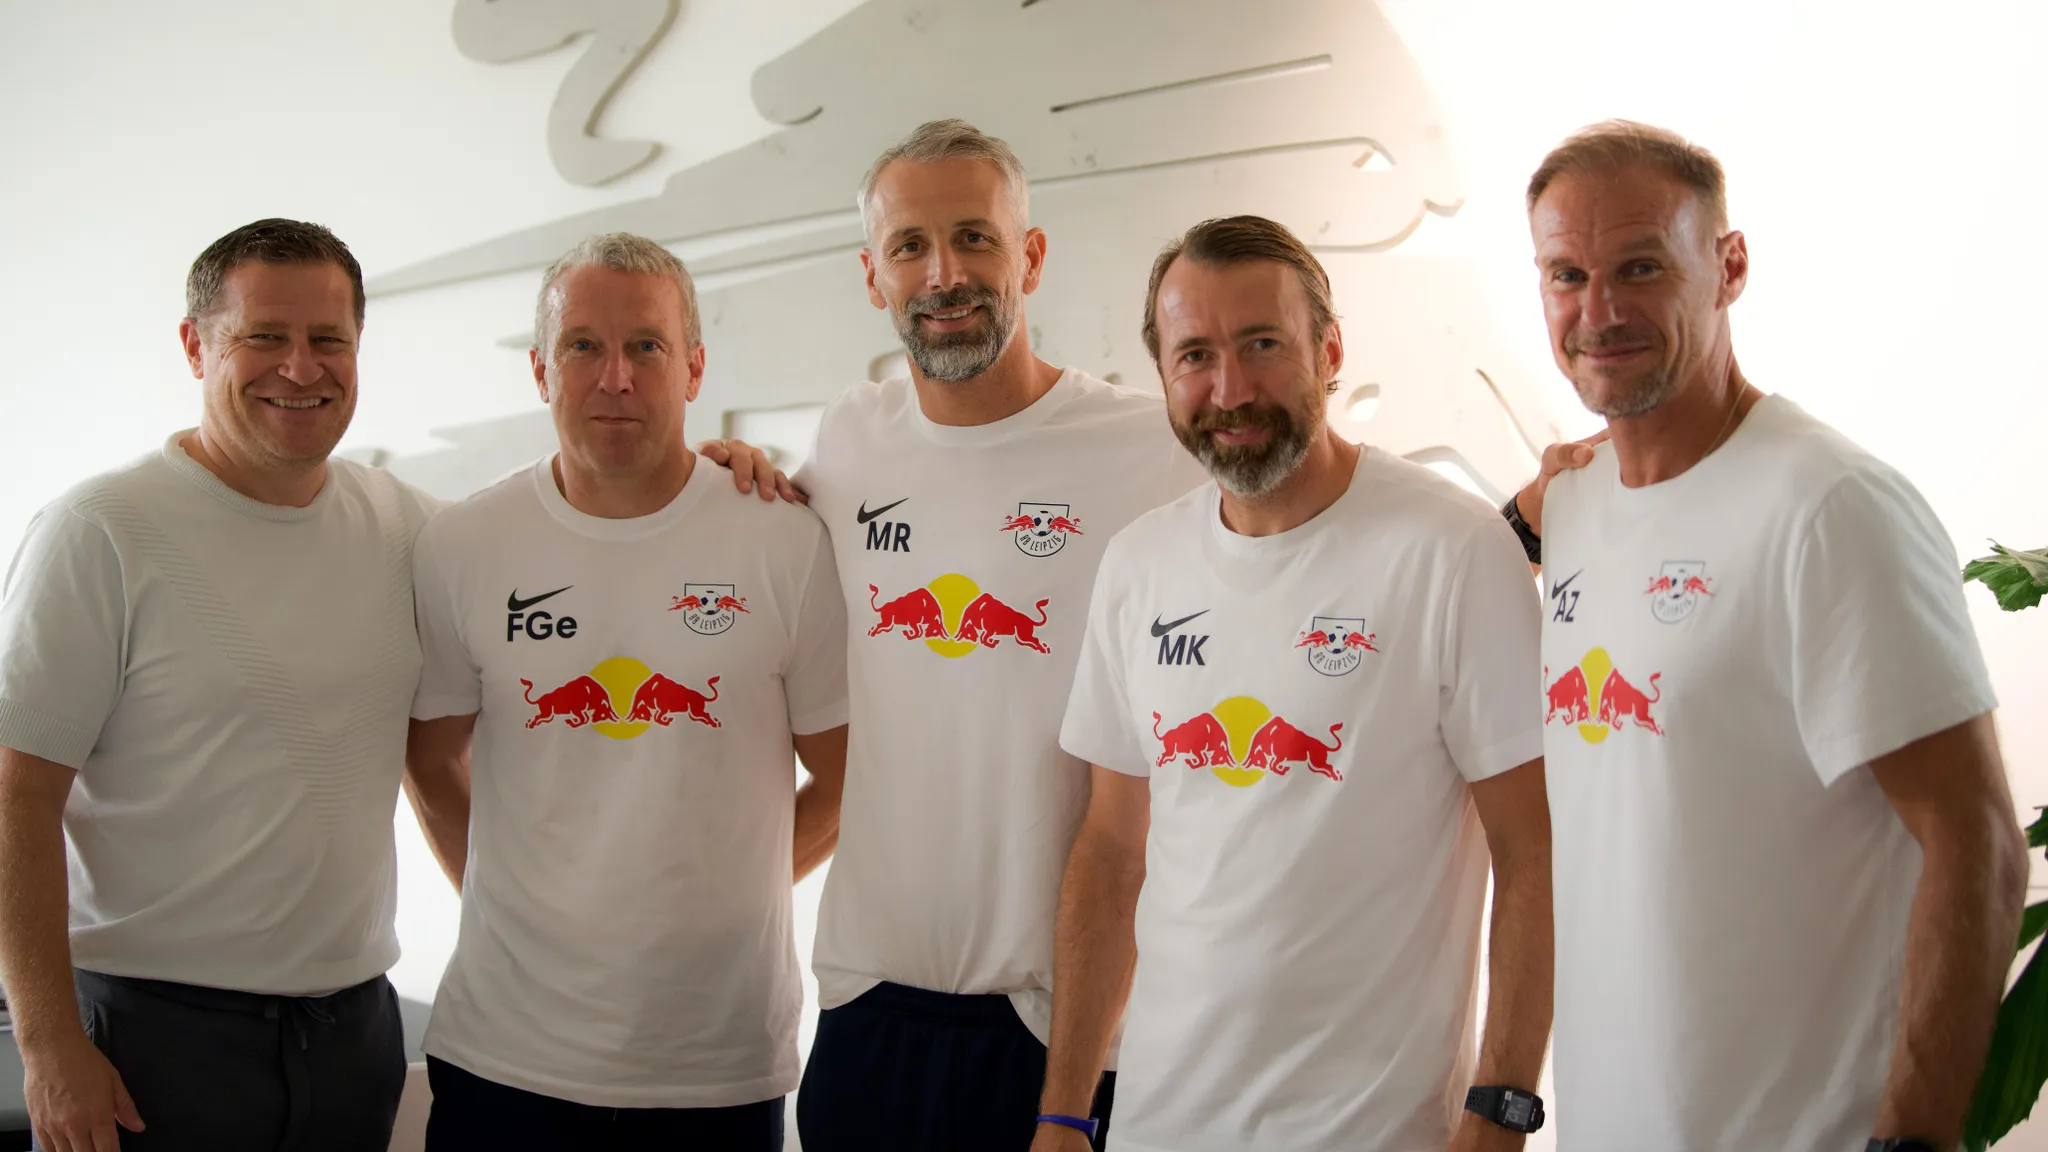 Starkes Team: Frank Geideck, Marco Rose, Marco Kurth und Alexander Zickler gemeinsam mit Max Eberl.